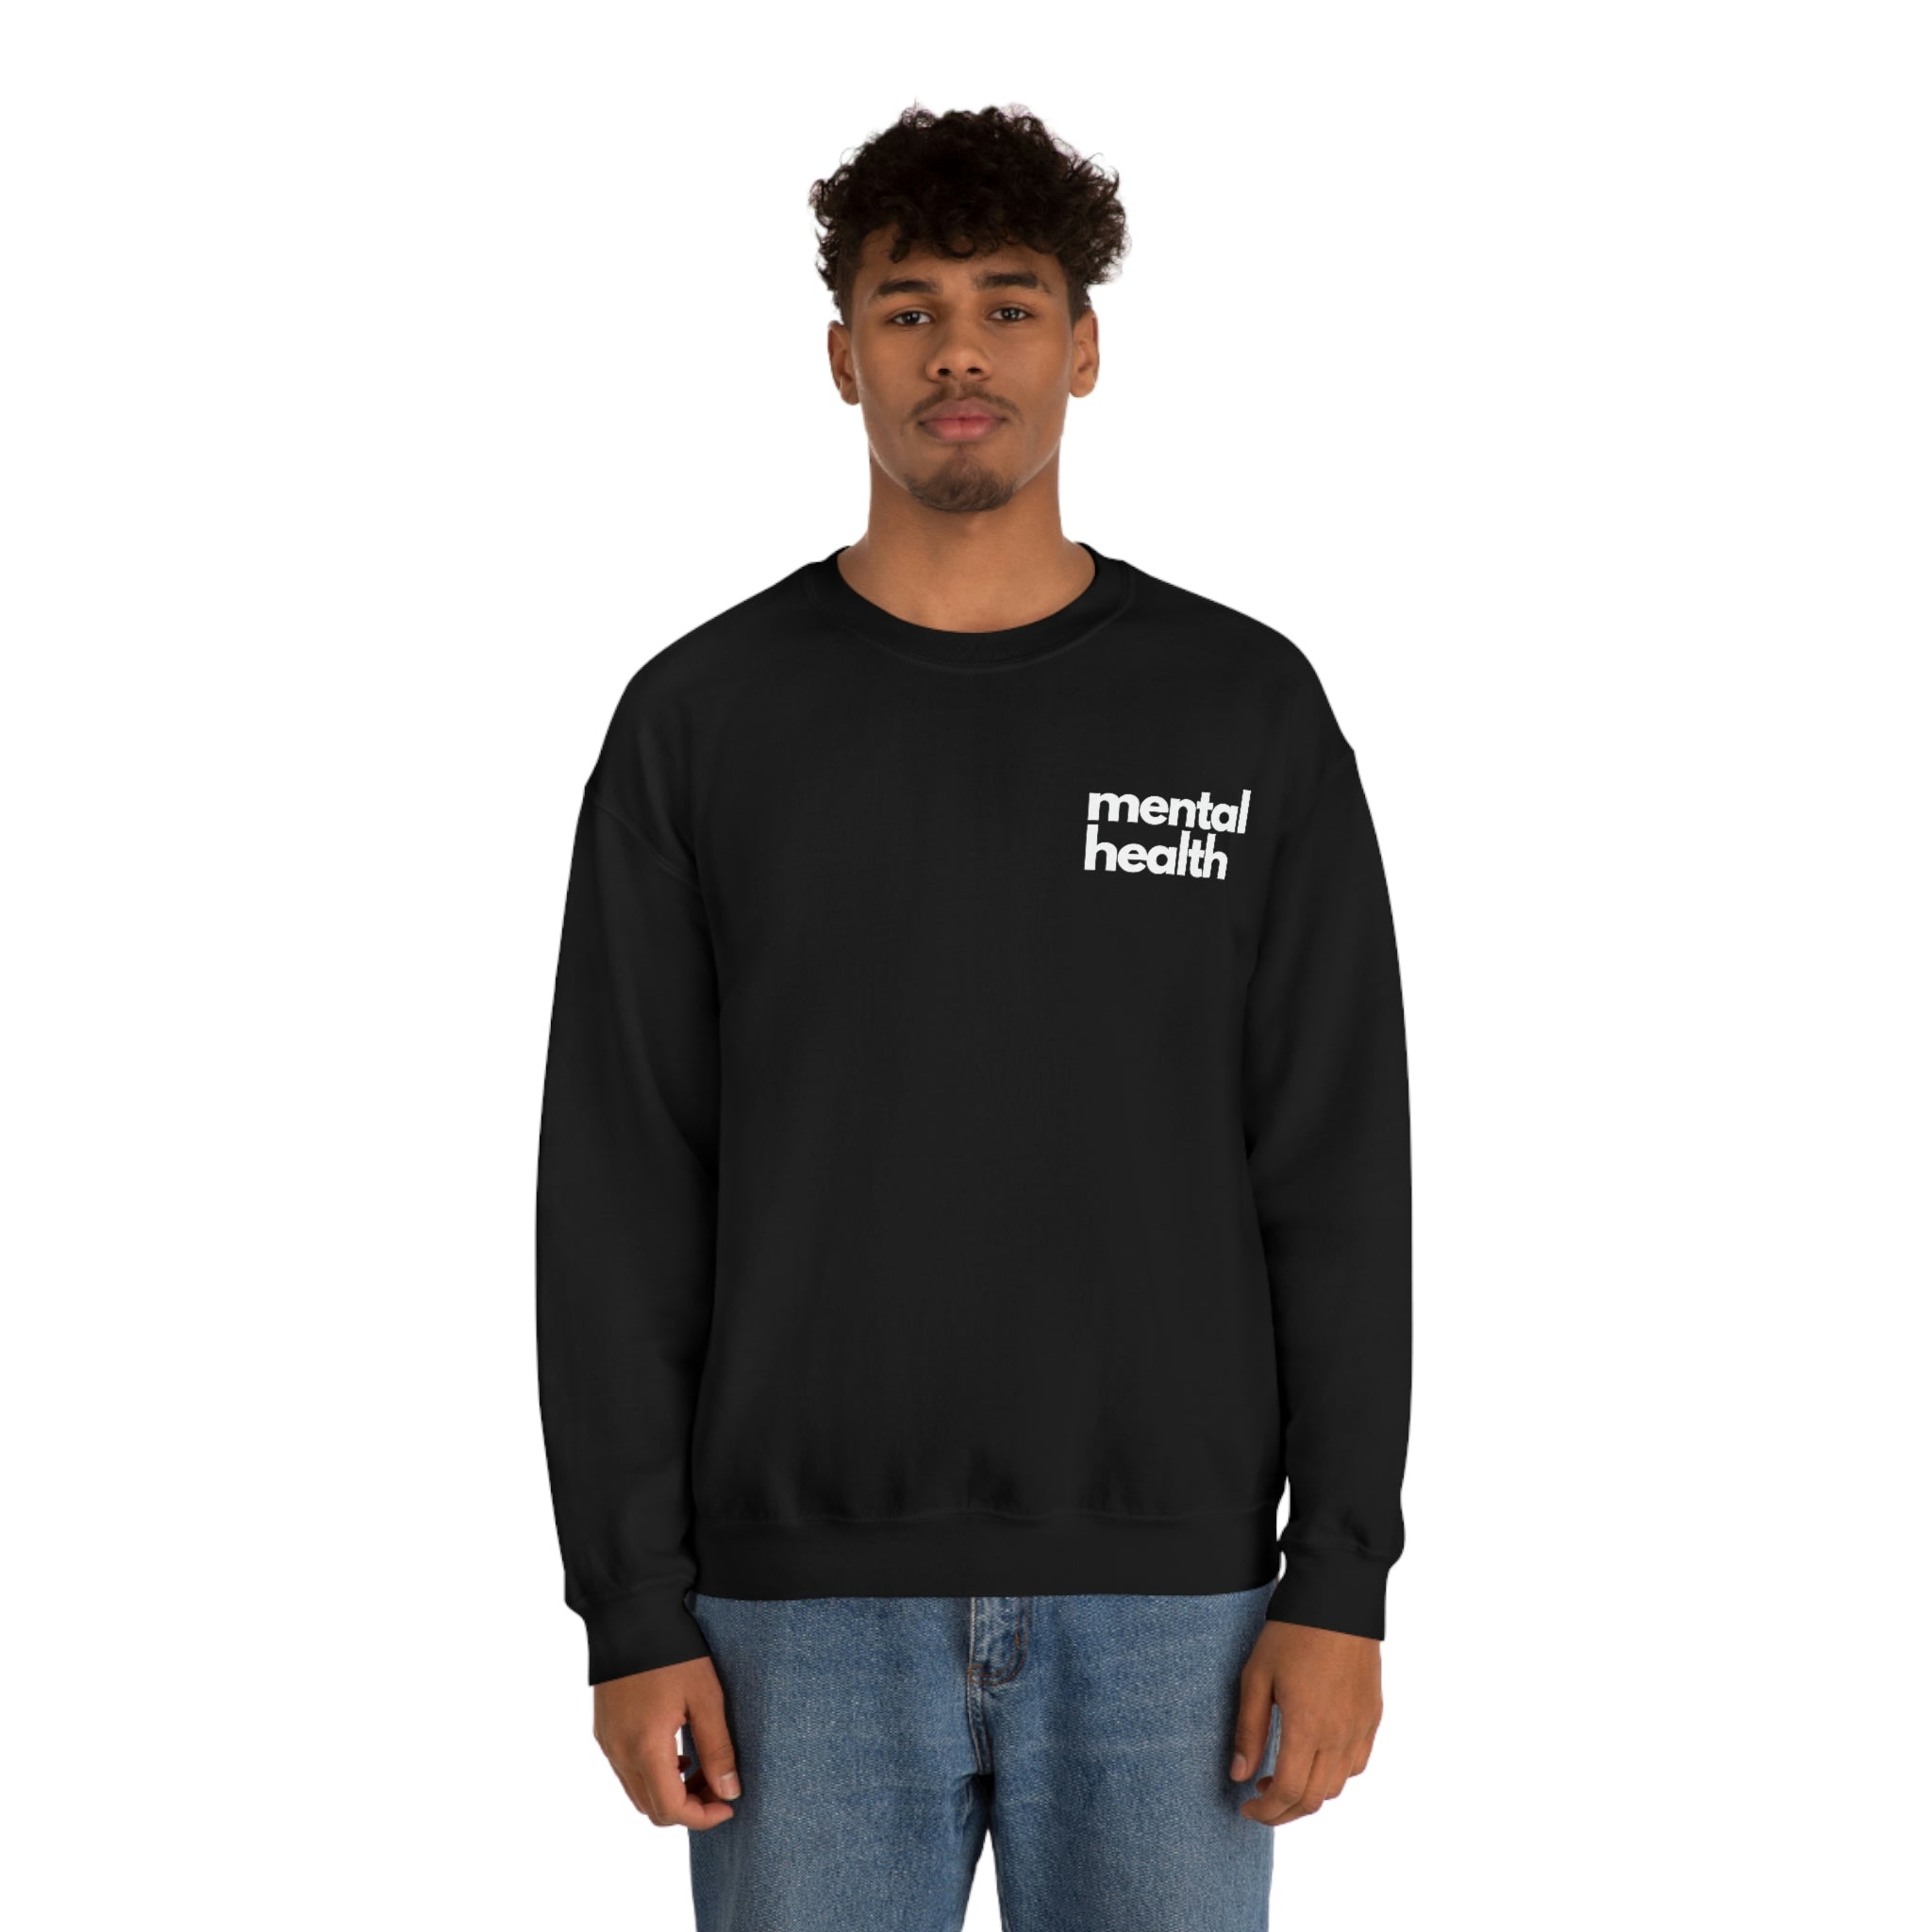 "mental health" Minimalist Unisex Sweatshirt